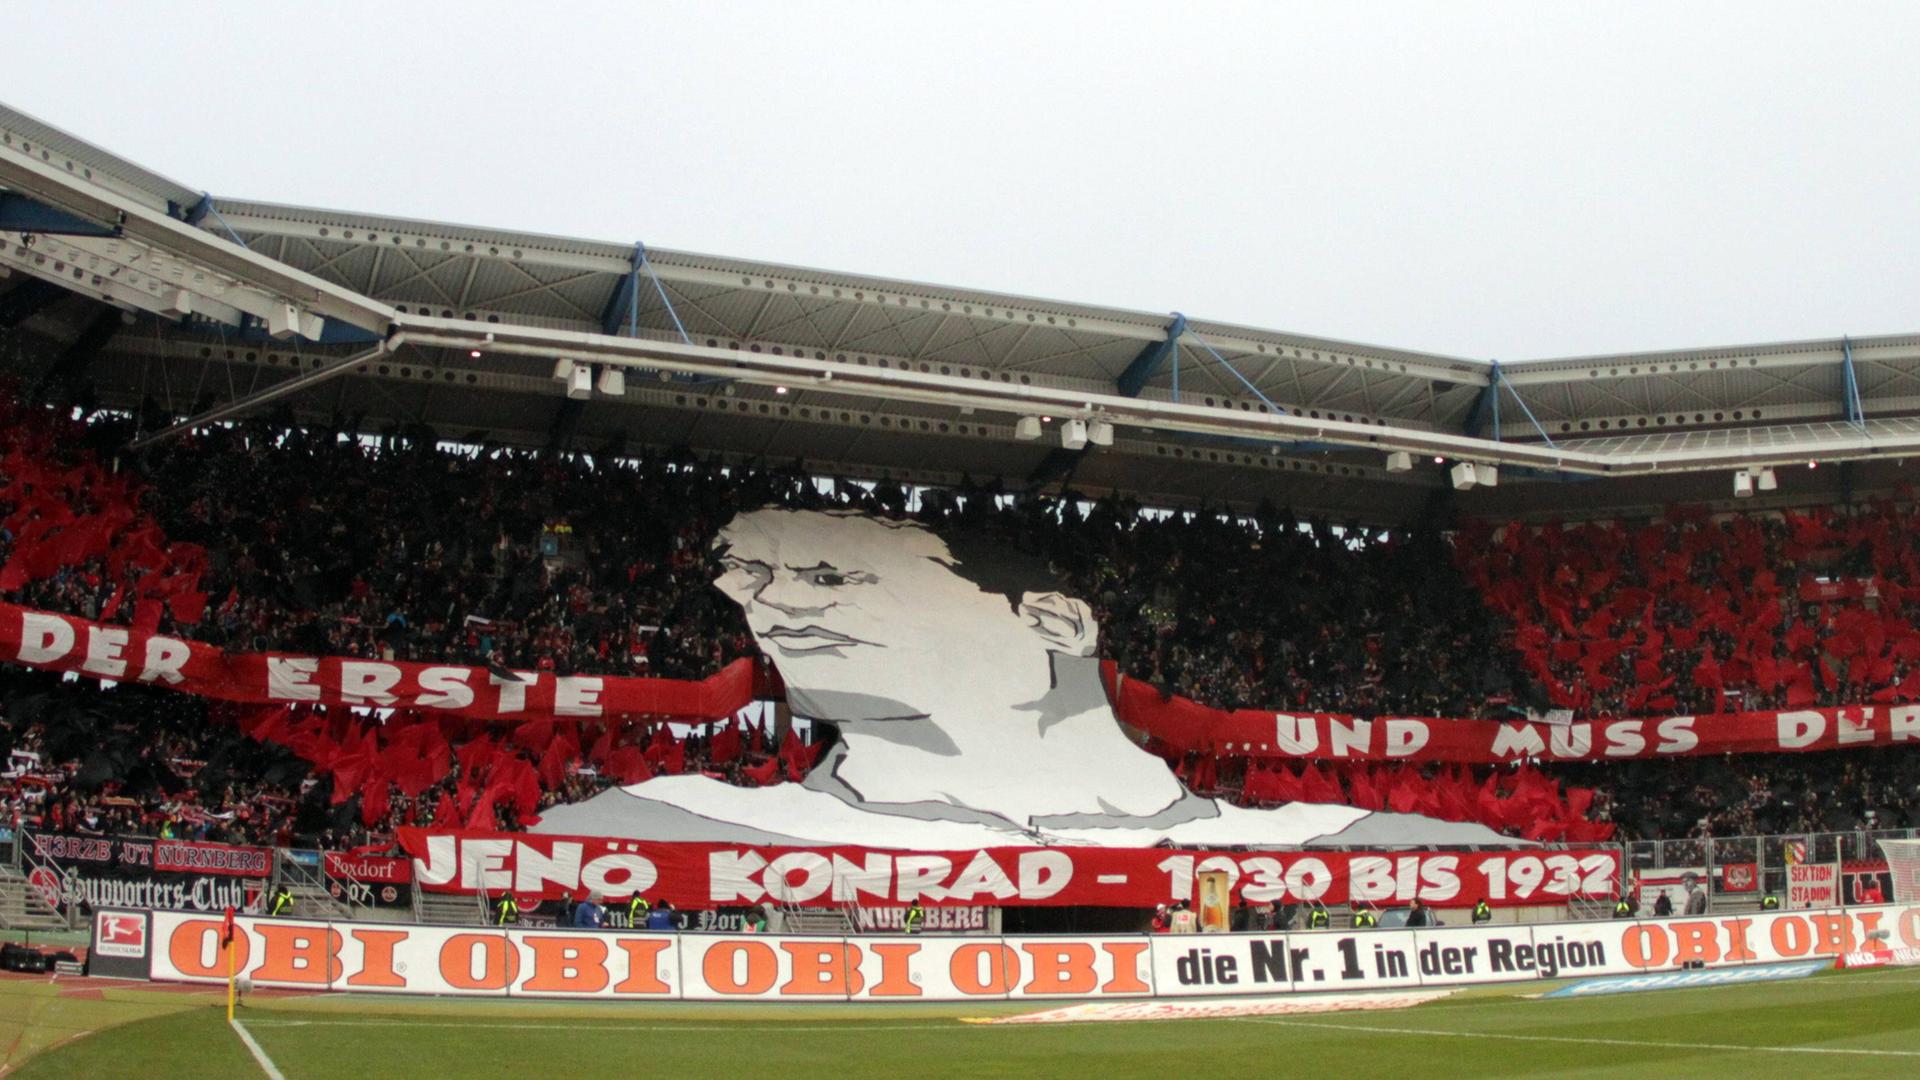 Die Fans des 1. FC Nürnberg gedenken dem Juden Jenö Konrad mit einer Choerographie.